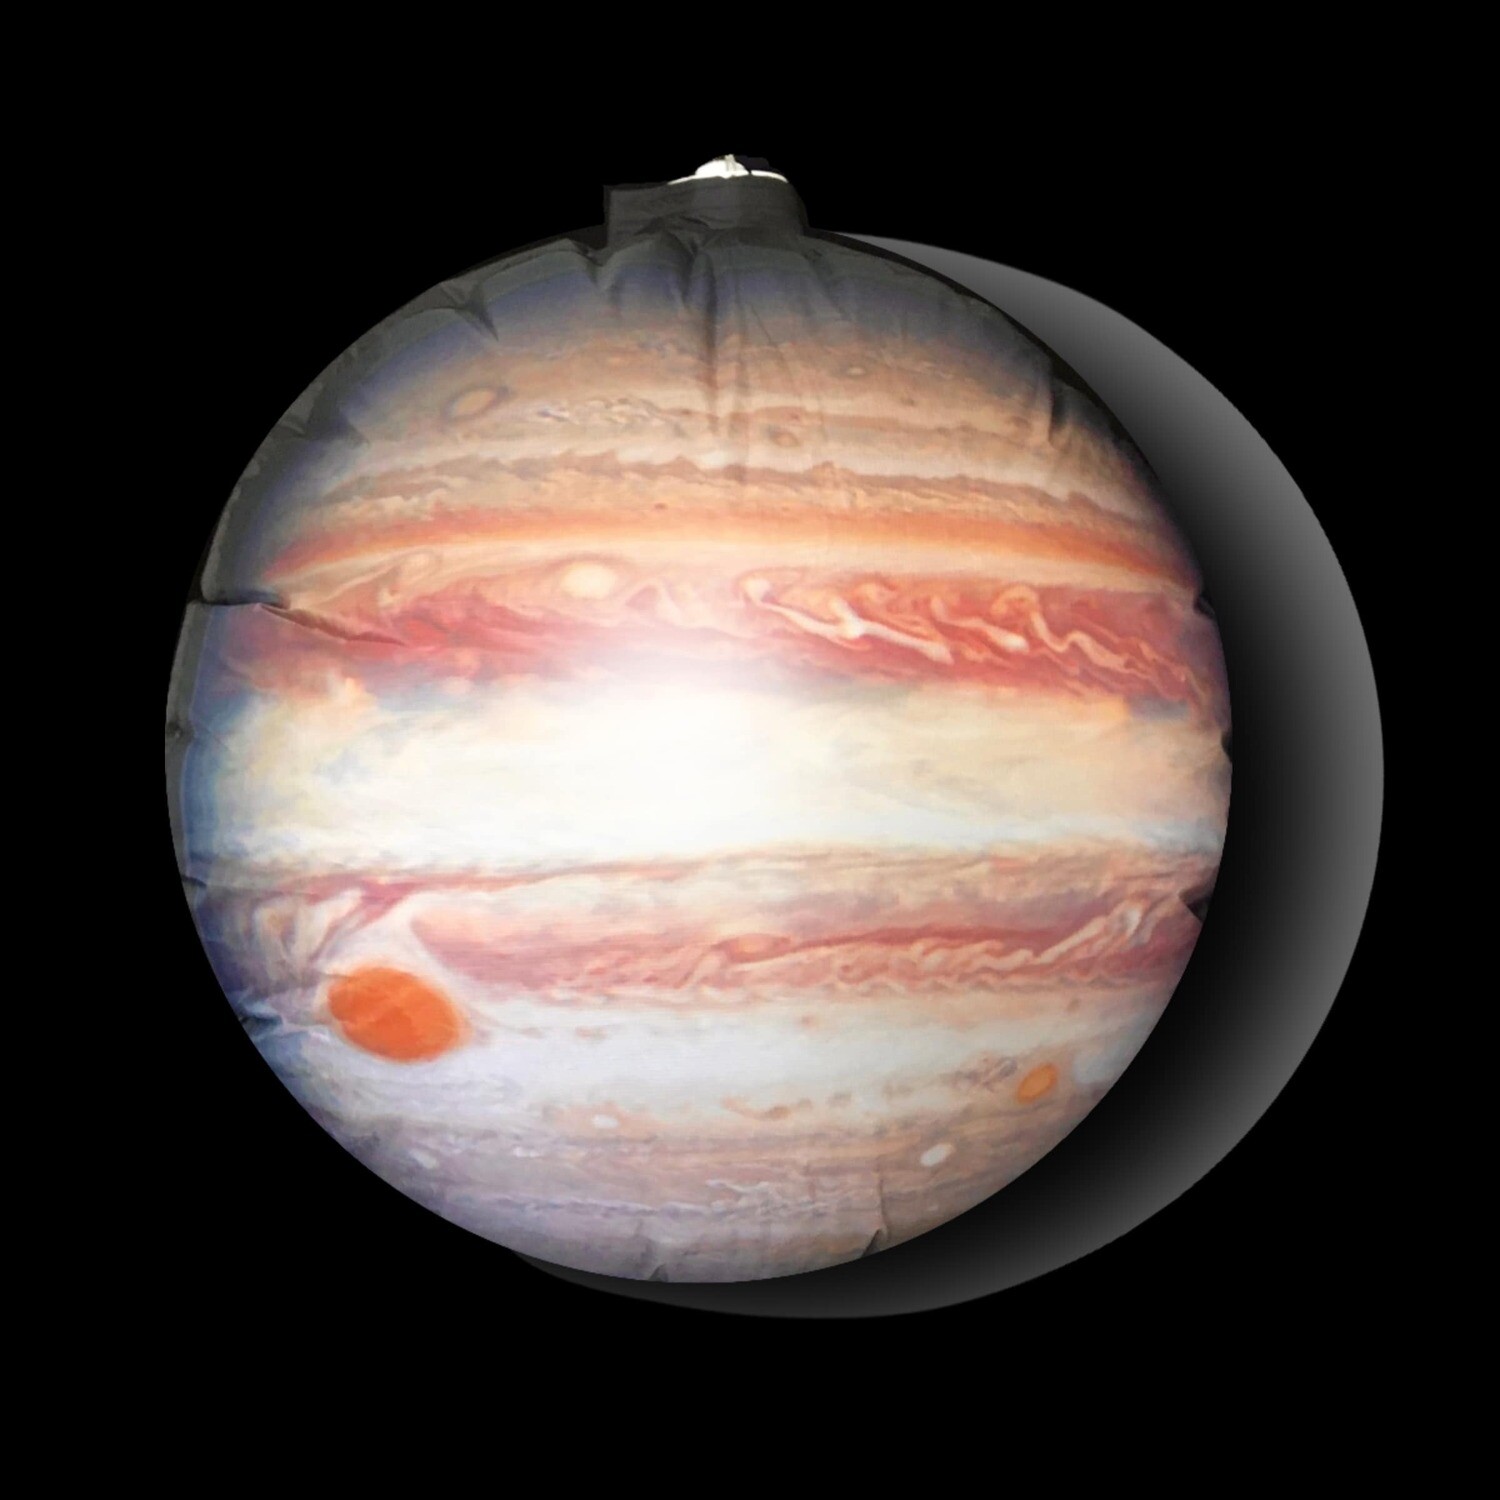 Hanging Inflatable Planet Jupiter 4.5ft/136cm x 4.5ft/136cm high